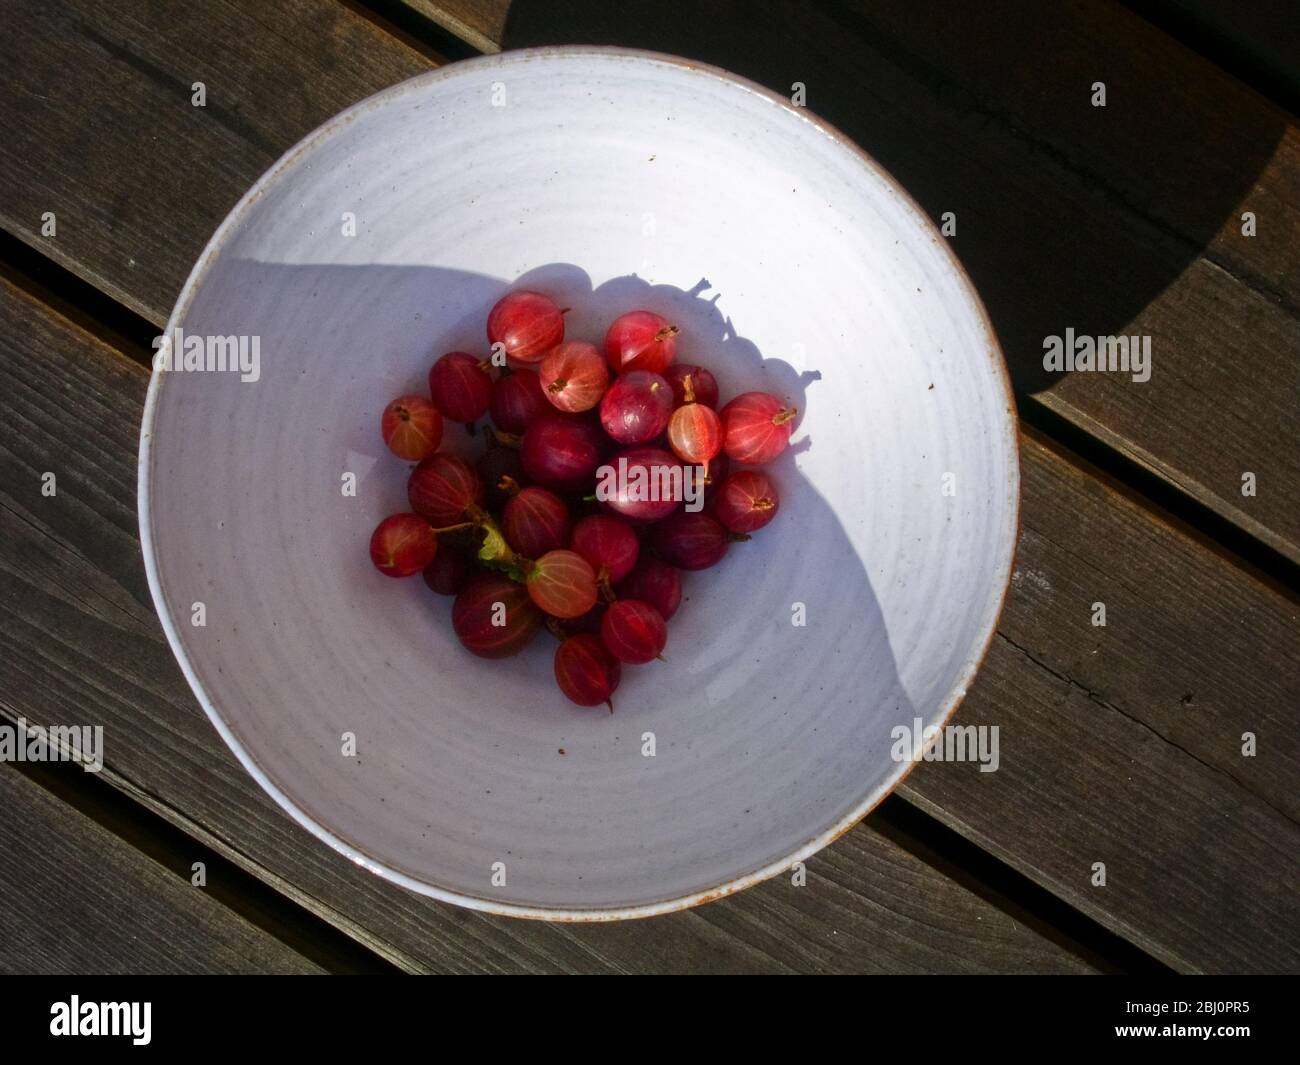 Mirtilli rossi appena raccolti in ciotola di ceramica bianca, al sole - Foto Stock